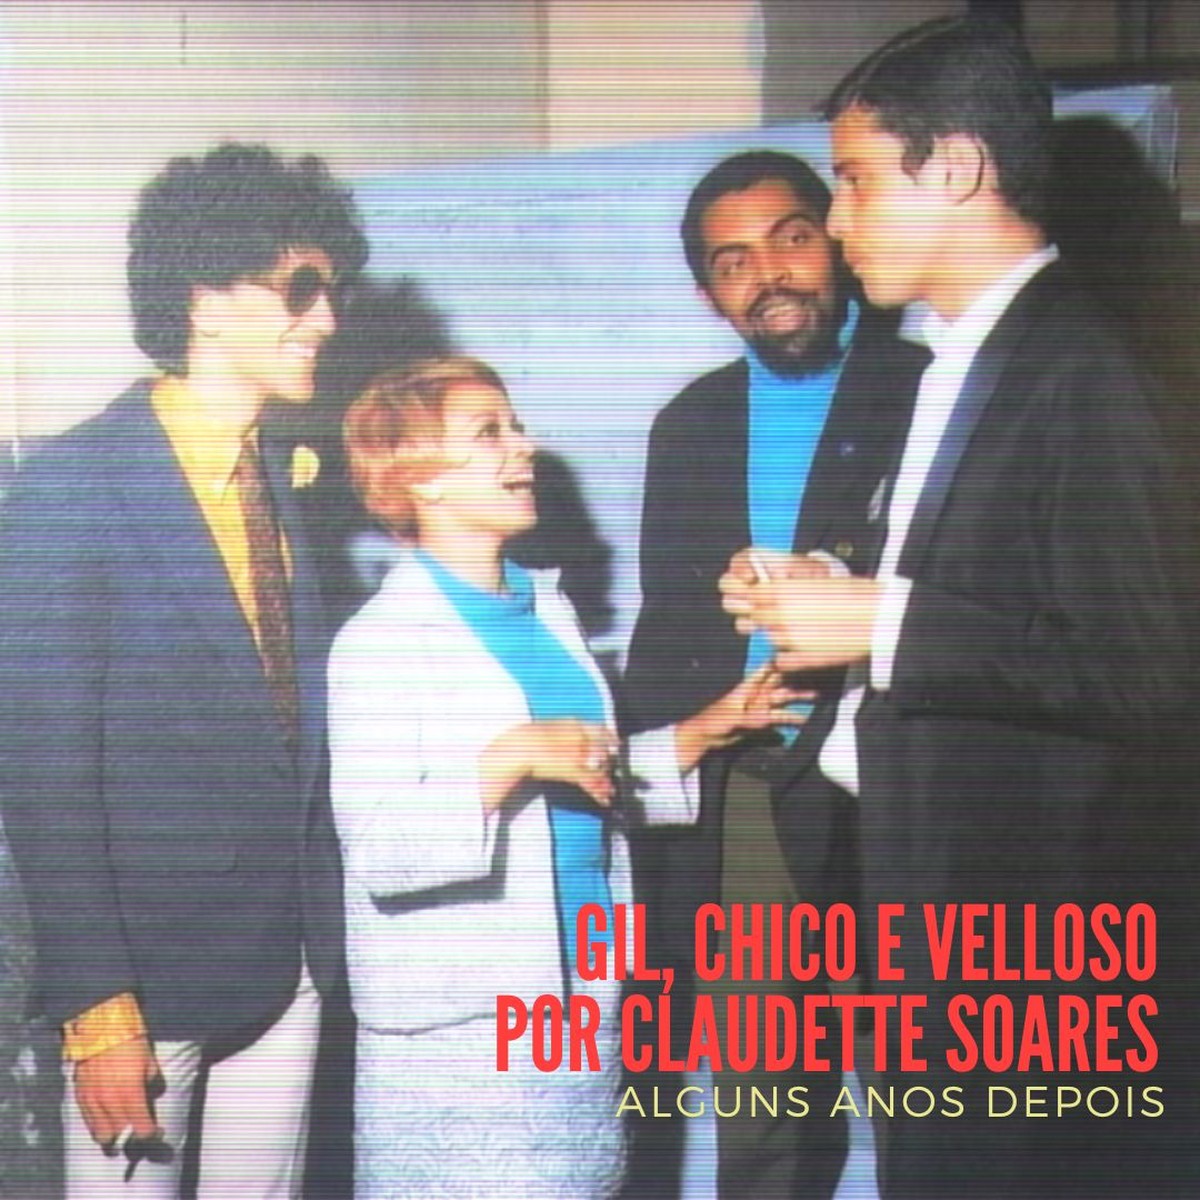 Claudette Soares volta a Caetano Veloso, Chico Buarque e Gilberto Gil 54 anos depois do álbum de 1968 |  Weblog do Mauro Ferreira